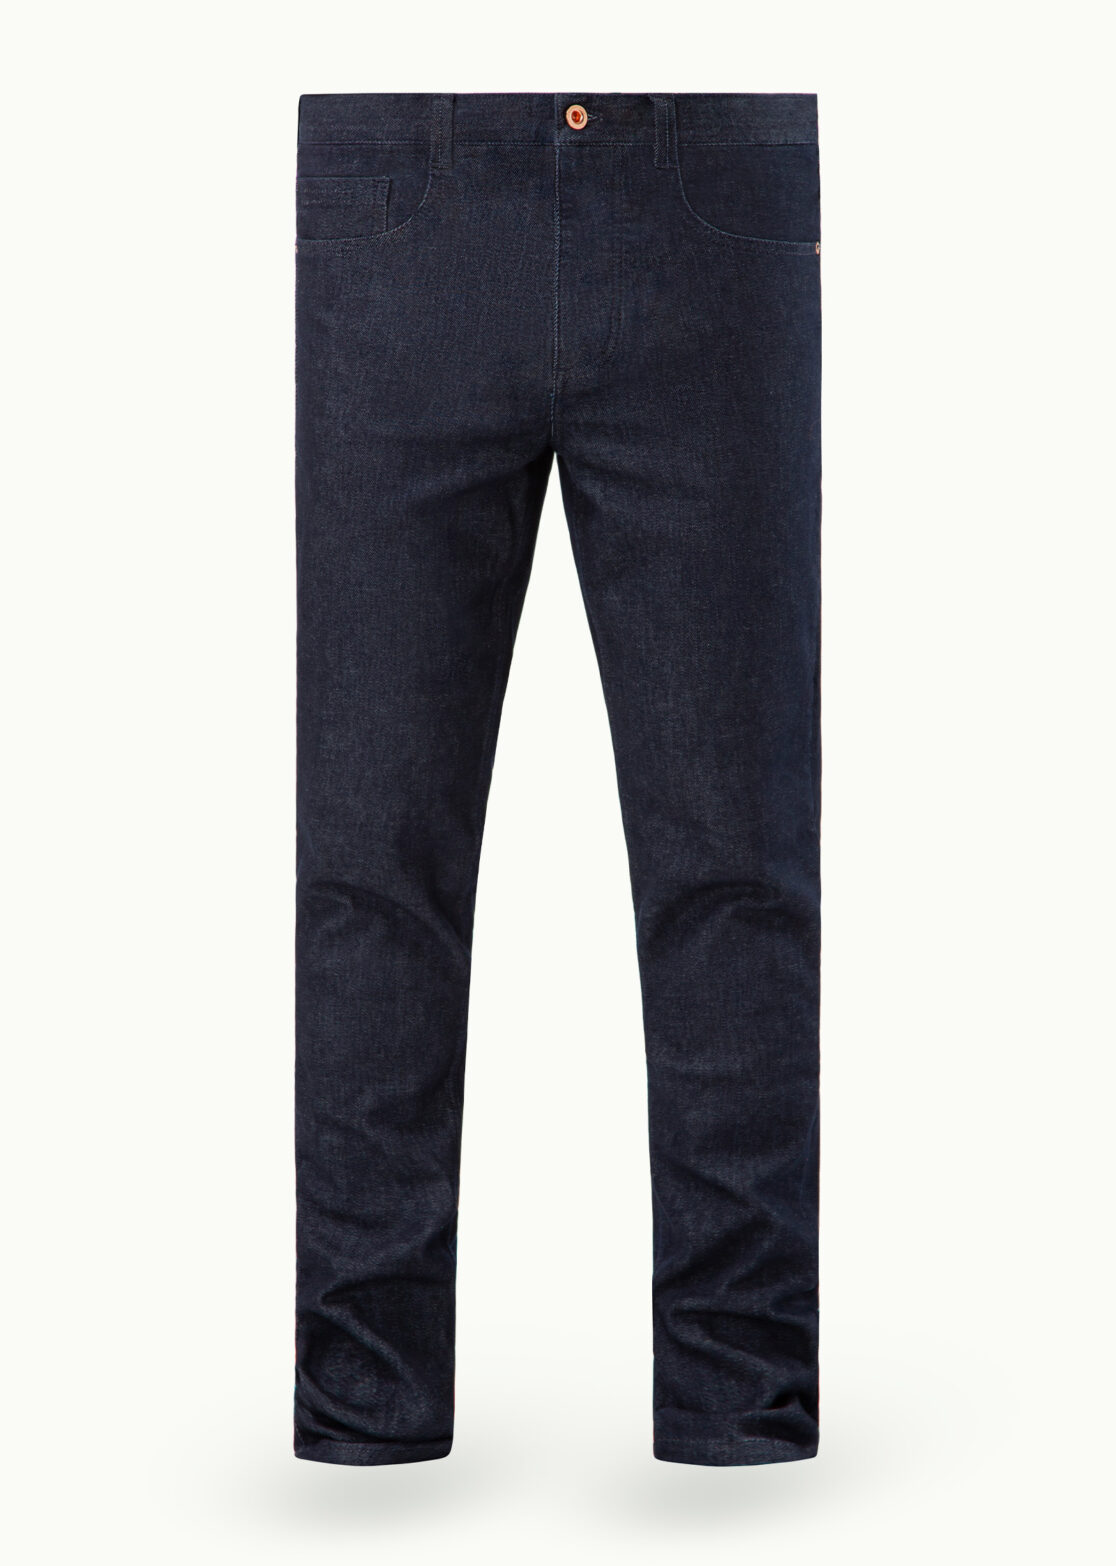 SALE - Men - Denim - Jeans - Tempus Jeans 13oz Blue Pacific Blue Image Primary